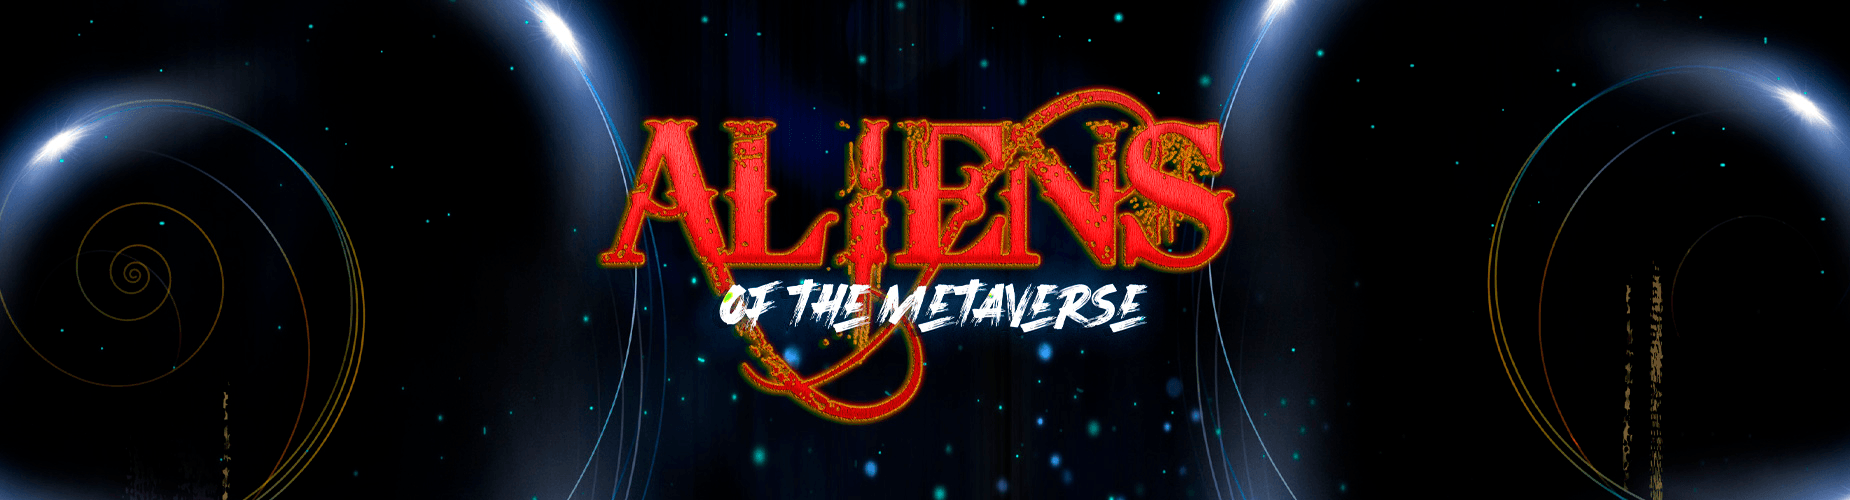 Aliens of the Metaverse Genesis